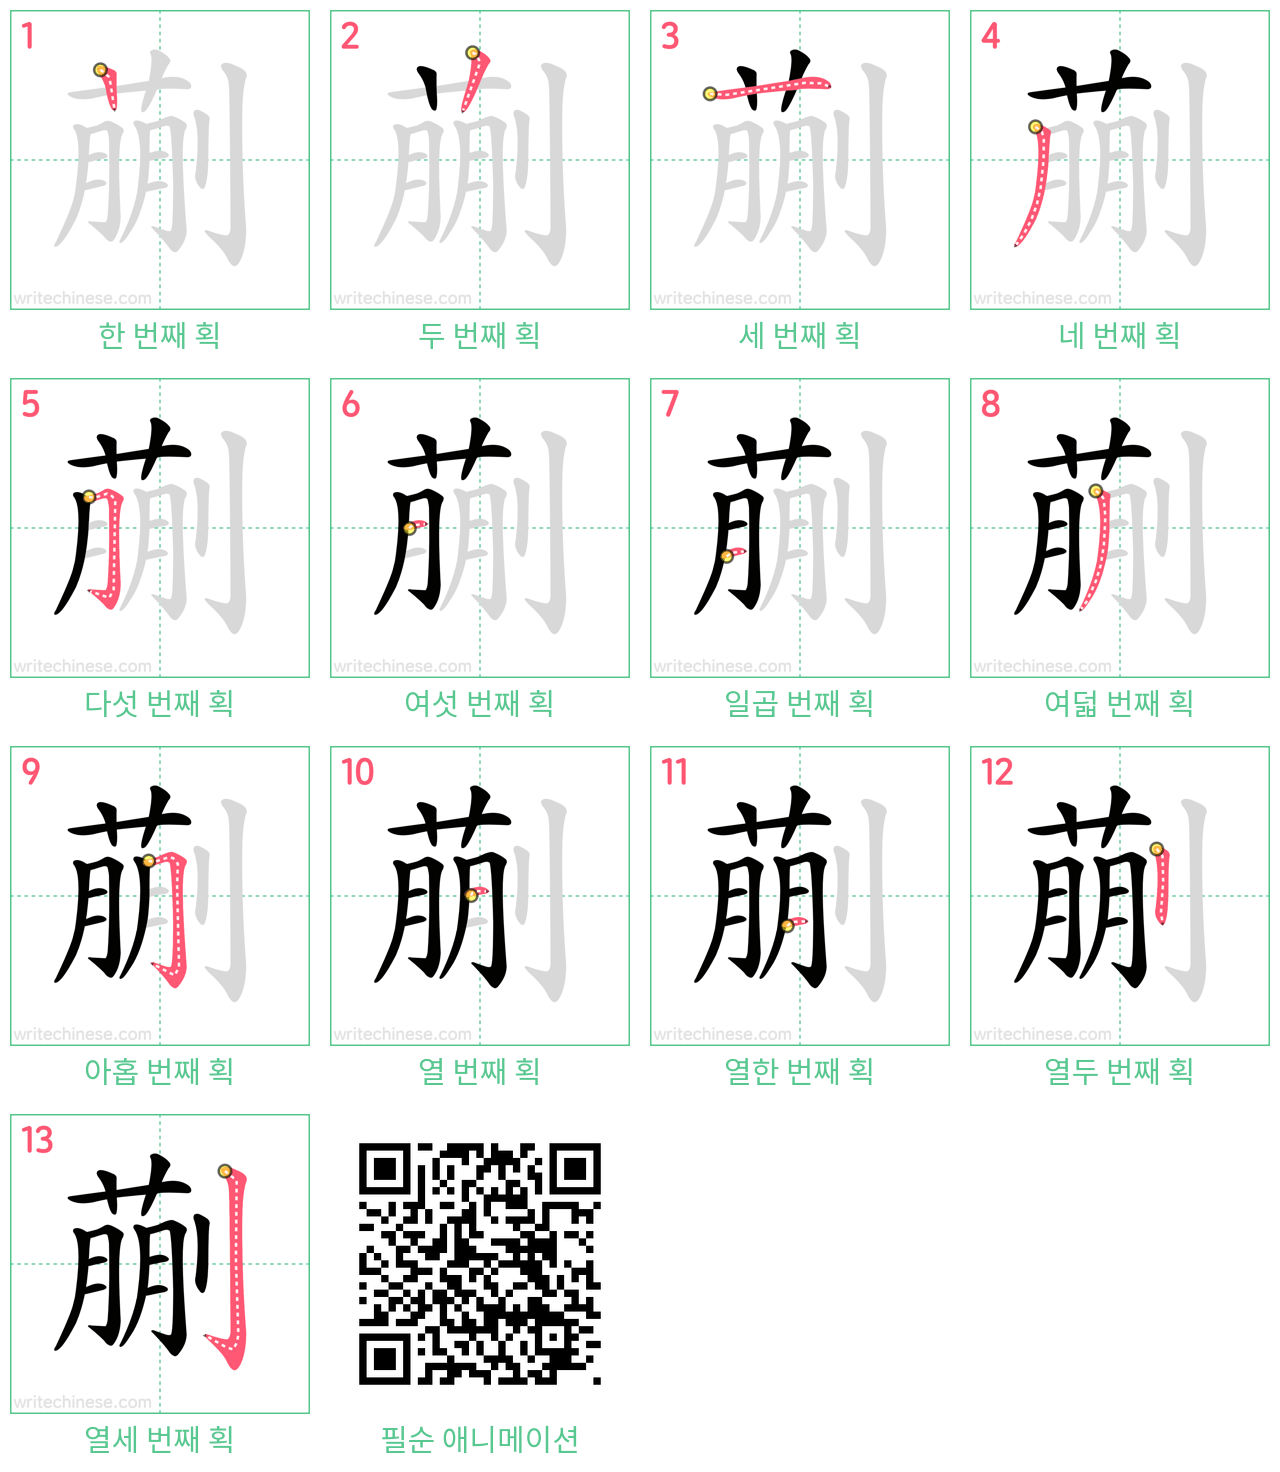 蒯 step-by-step stroke order diagrams